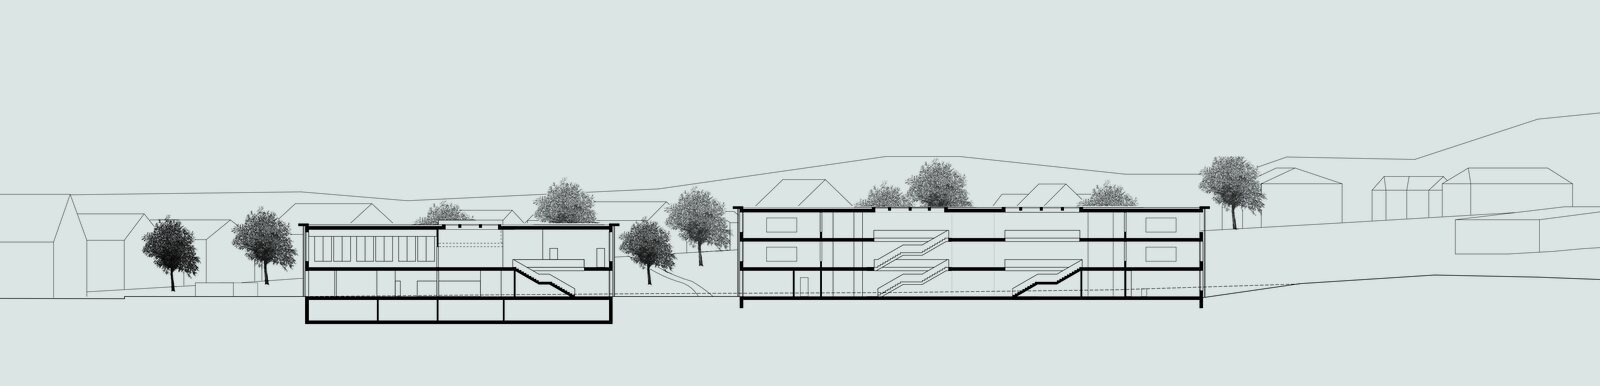 Einsiedeln - Schulhaus Herrenmatte - Schmid Schaerer Architekten Zürich